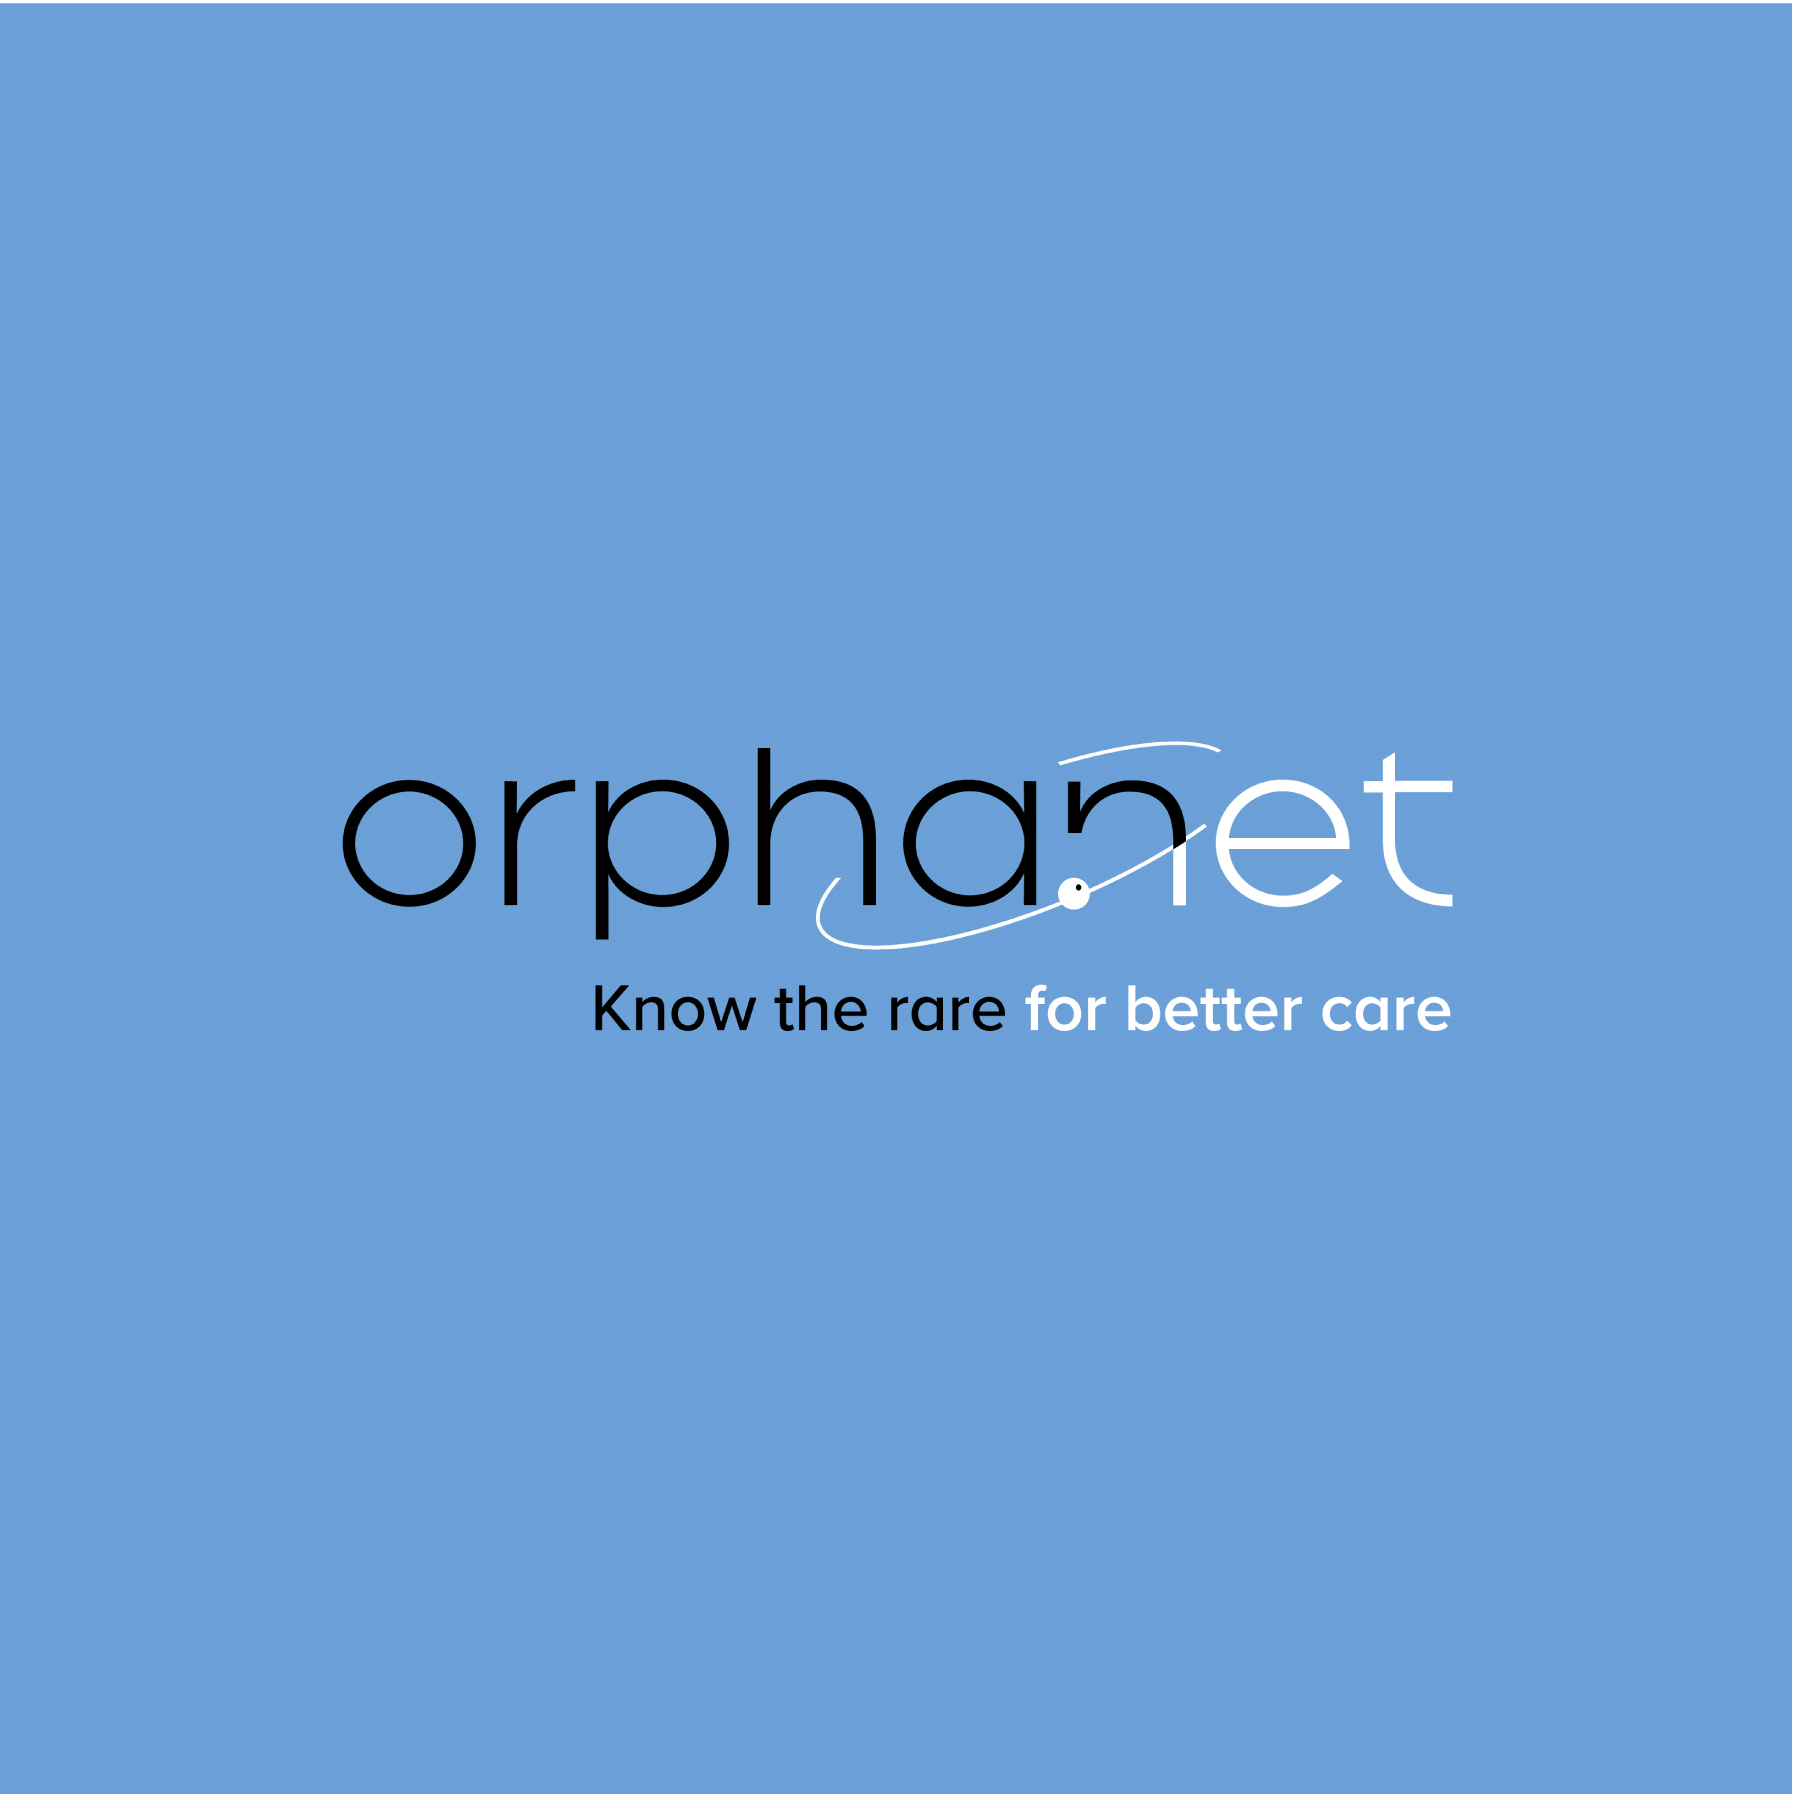 Orphanet Logotype better